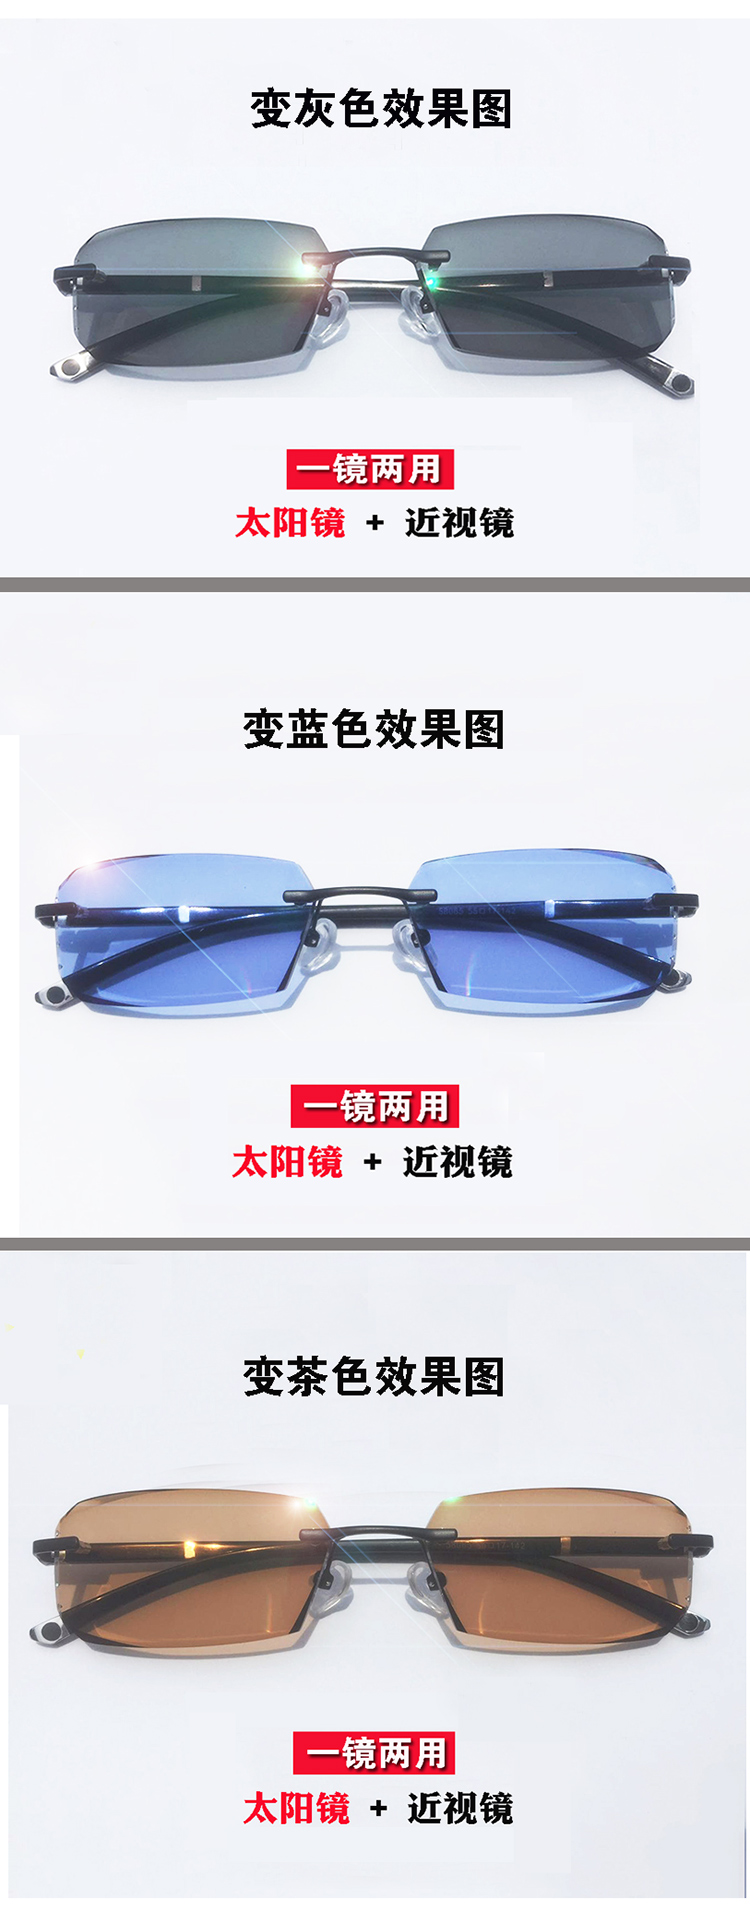 Montures de lunettes en Tole - Ref 3138598 Image 15